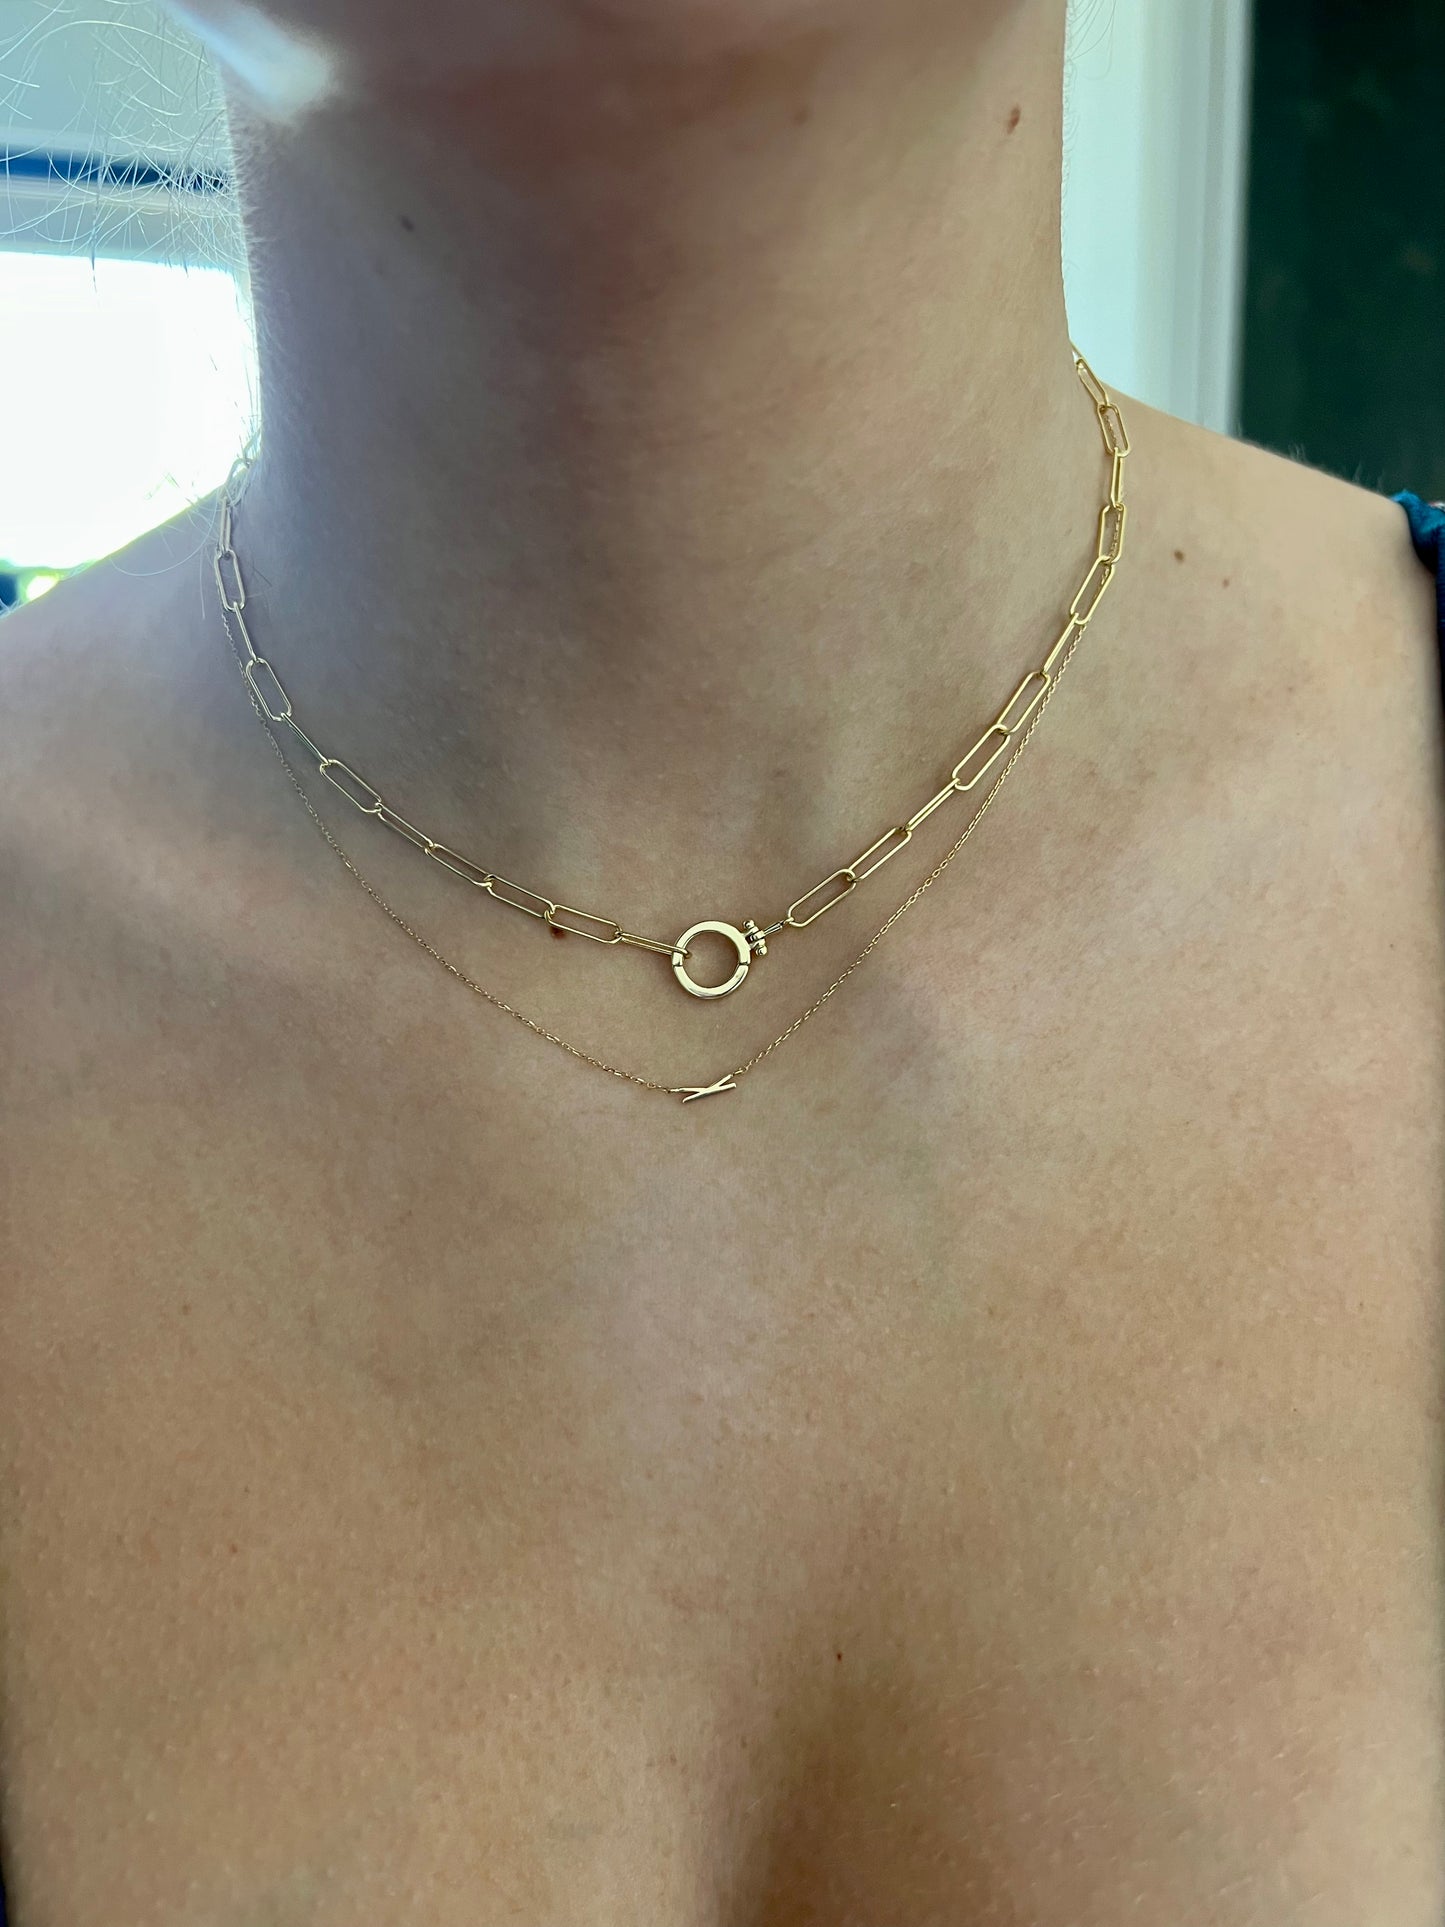 Confinement Paperclip Chain Necklace - Short